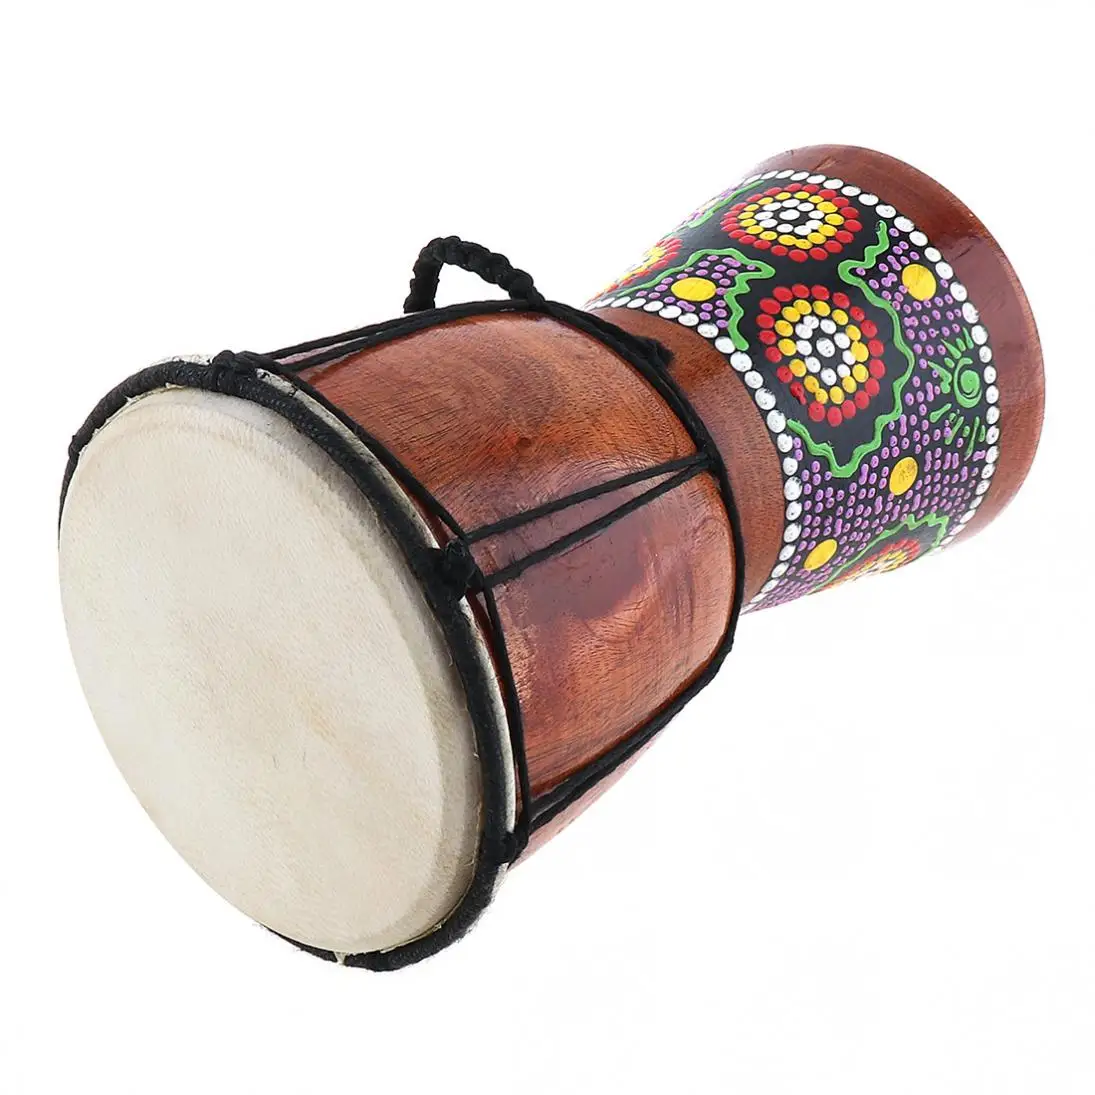 4 дюймов Профессиональный Африканский Djembe барабан дерево козья кожа хороший звук Африканский музыкальный инструмент